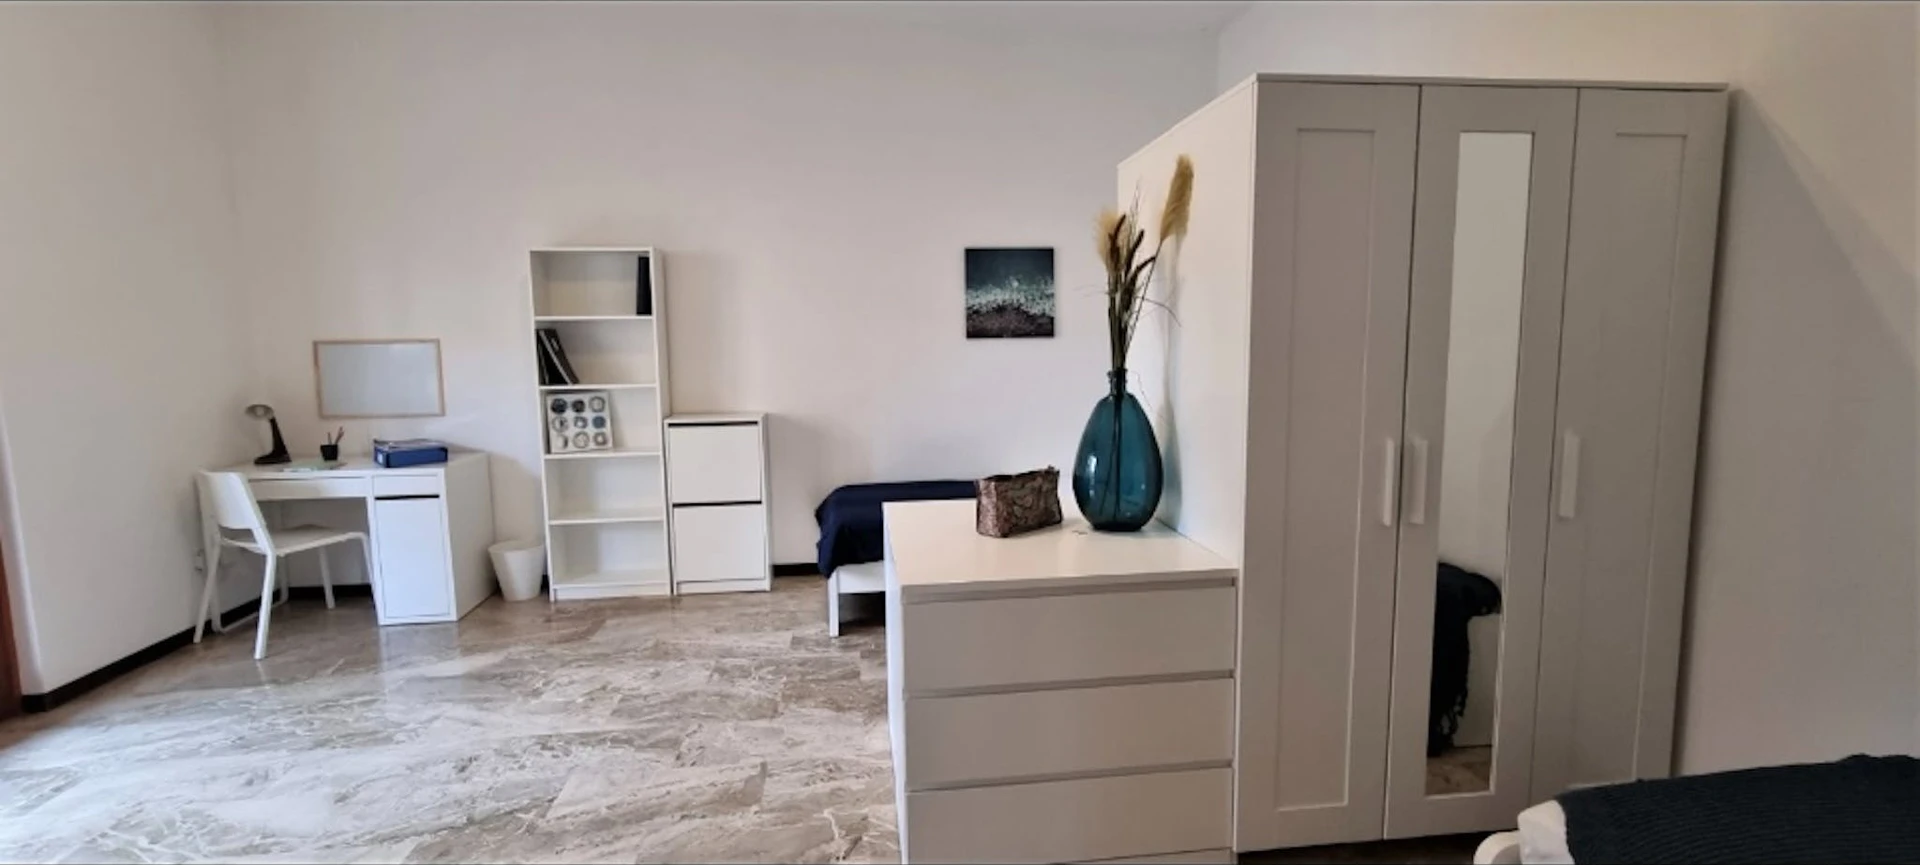 Mehrbettzimmer in 3-Zimmer-Wohnung Bergamo